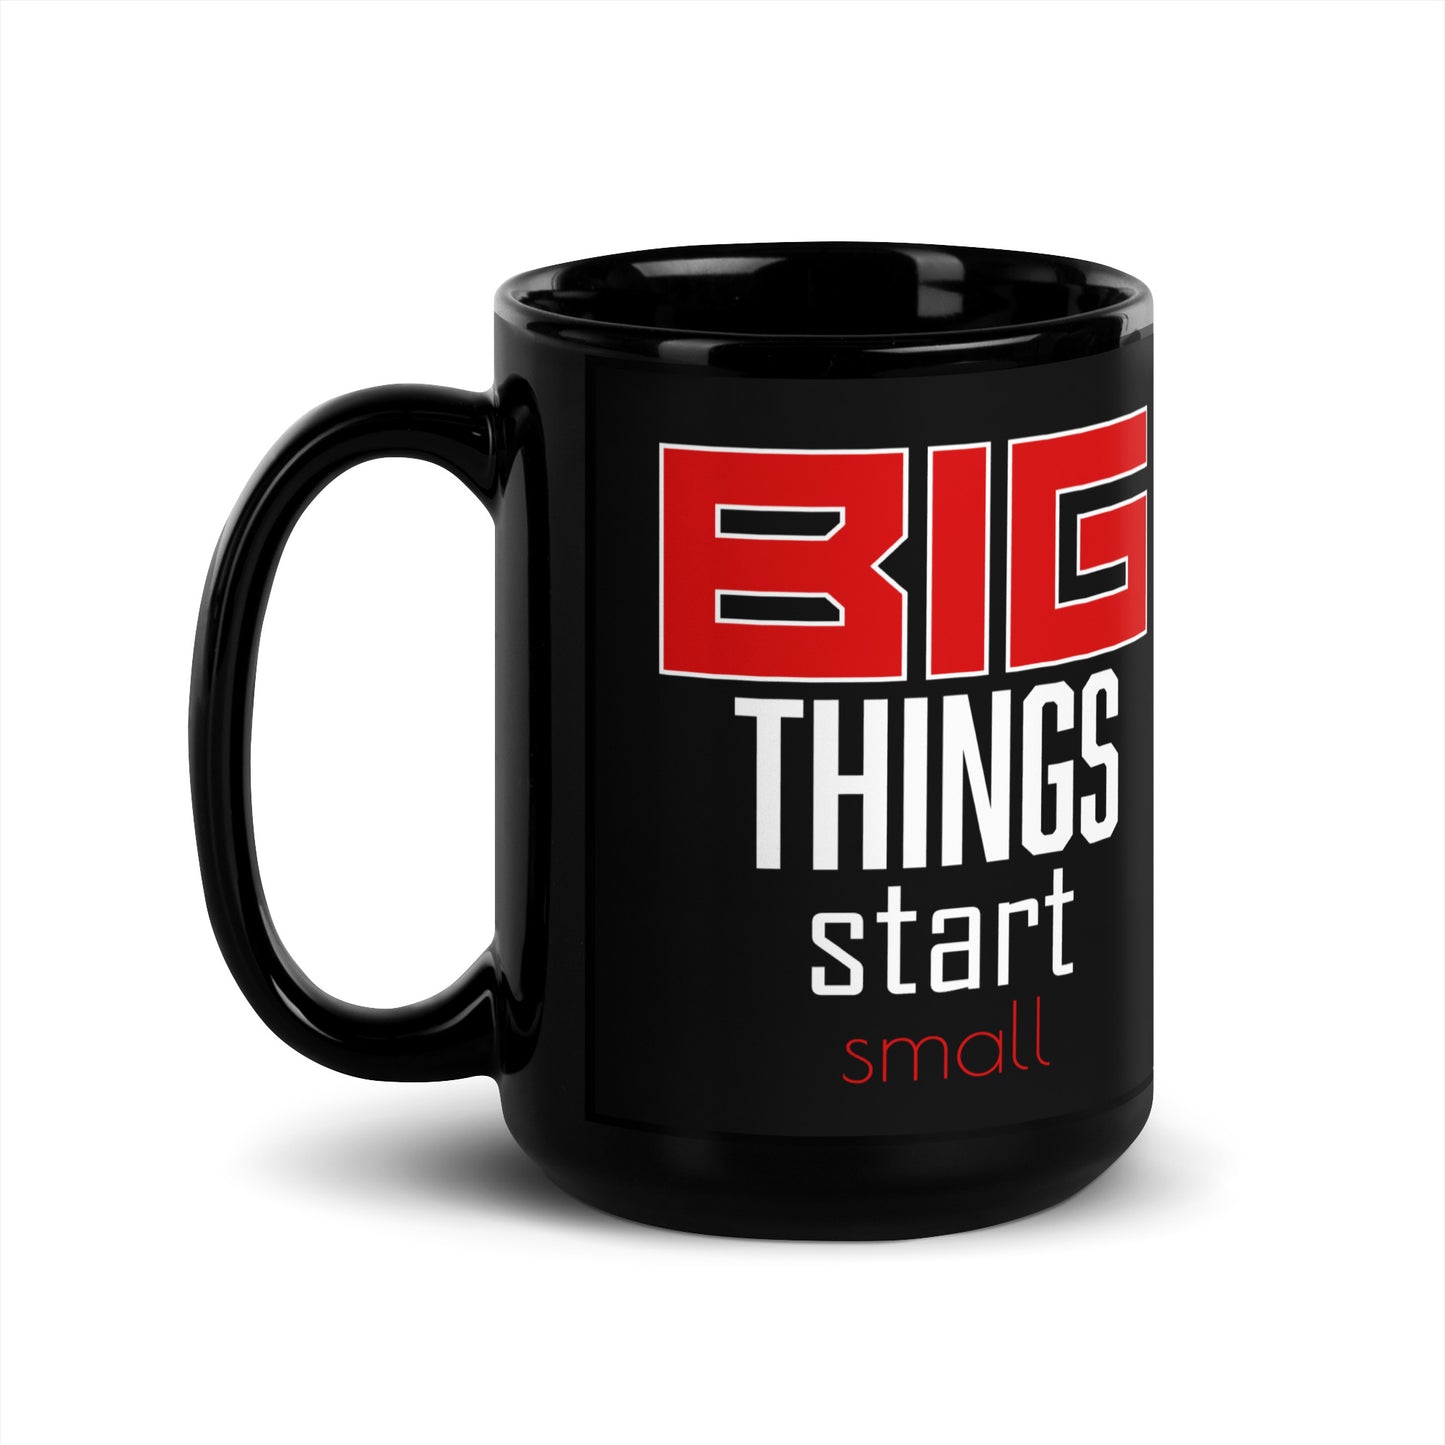 BIG Things-Black Glossy Mug